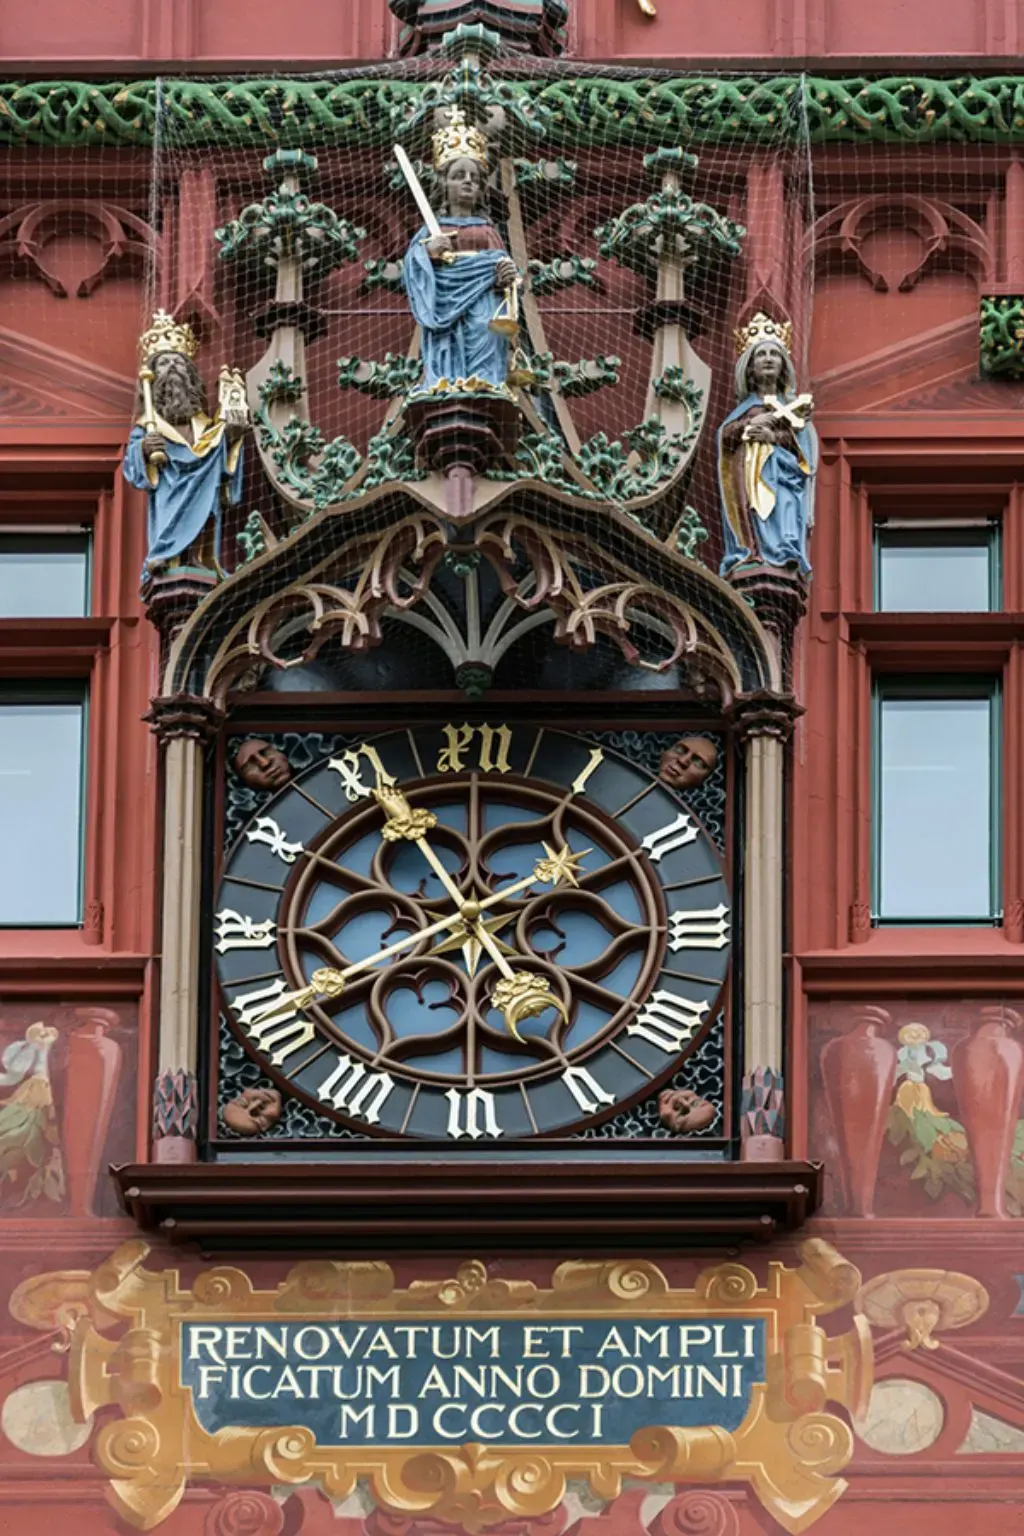 Heinrich mit Münstermodell, Justitia mit Schwert und Kunigunde mit Kreuz an der Fassade des Basler Rathauses